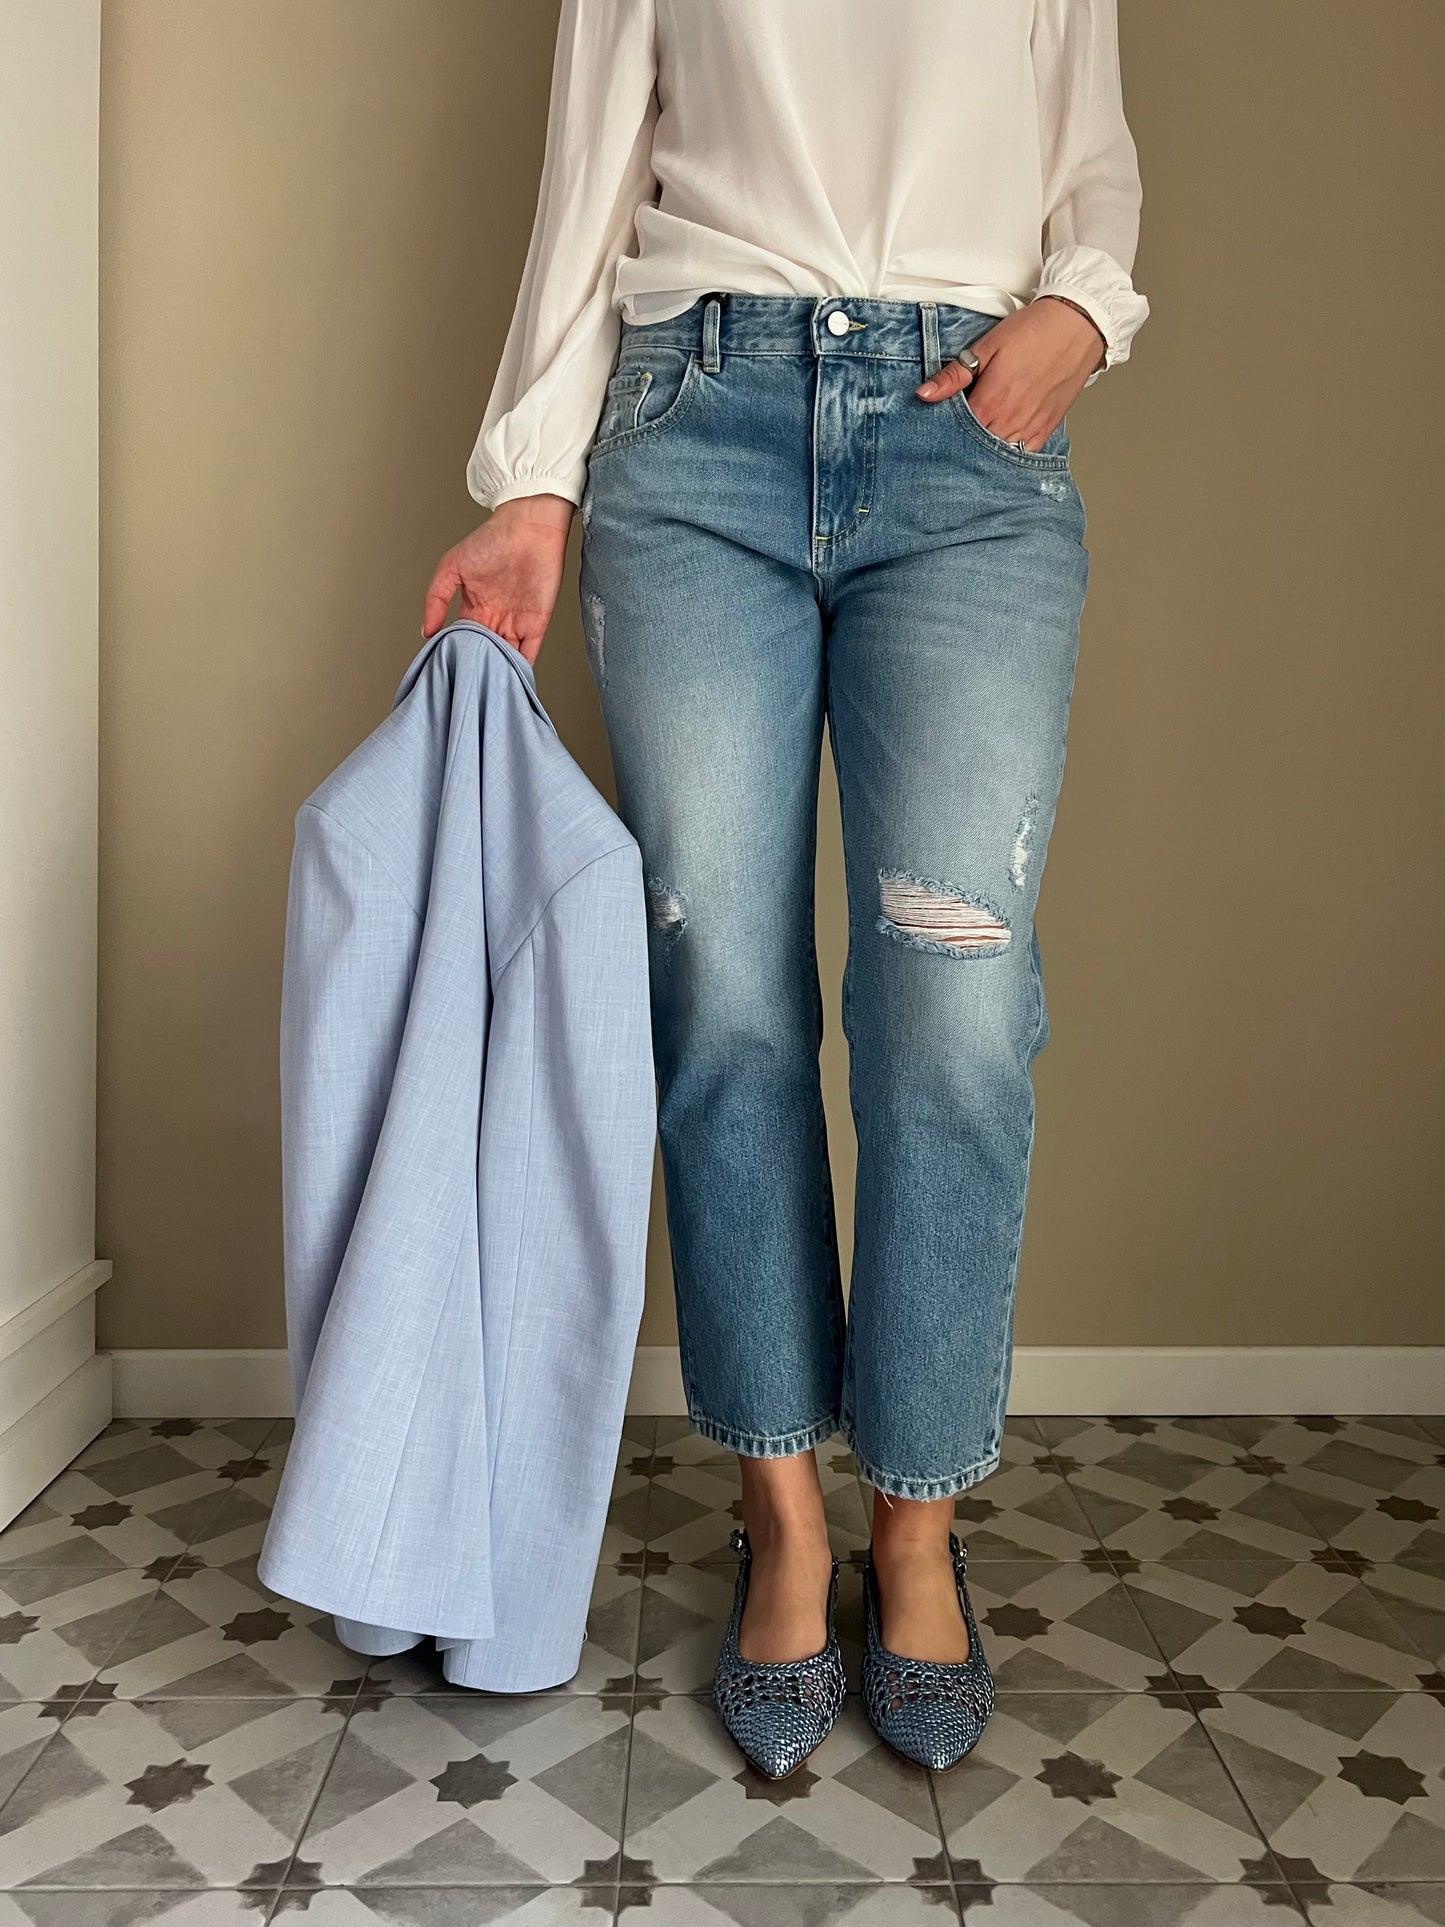 Pantalone jeans Icon Denim mod Lana